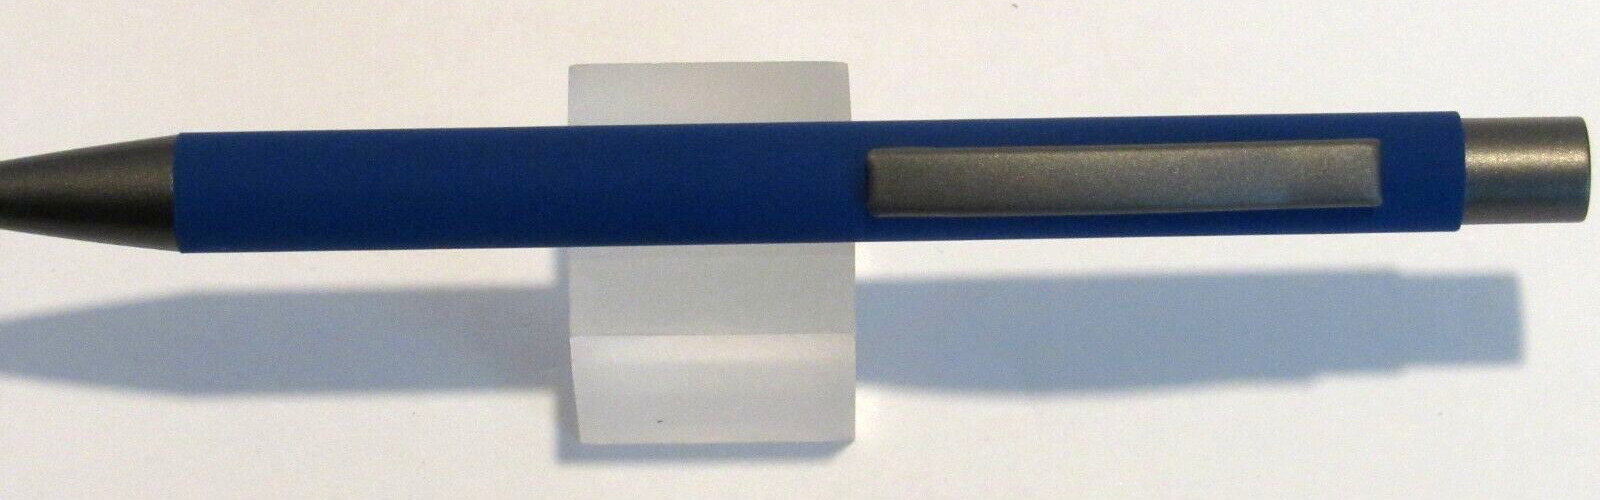 Terzetti Model COMFY Metal Click Top Ballpoint Pen-Rubberized Body-BLUE